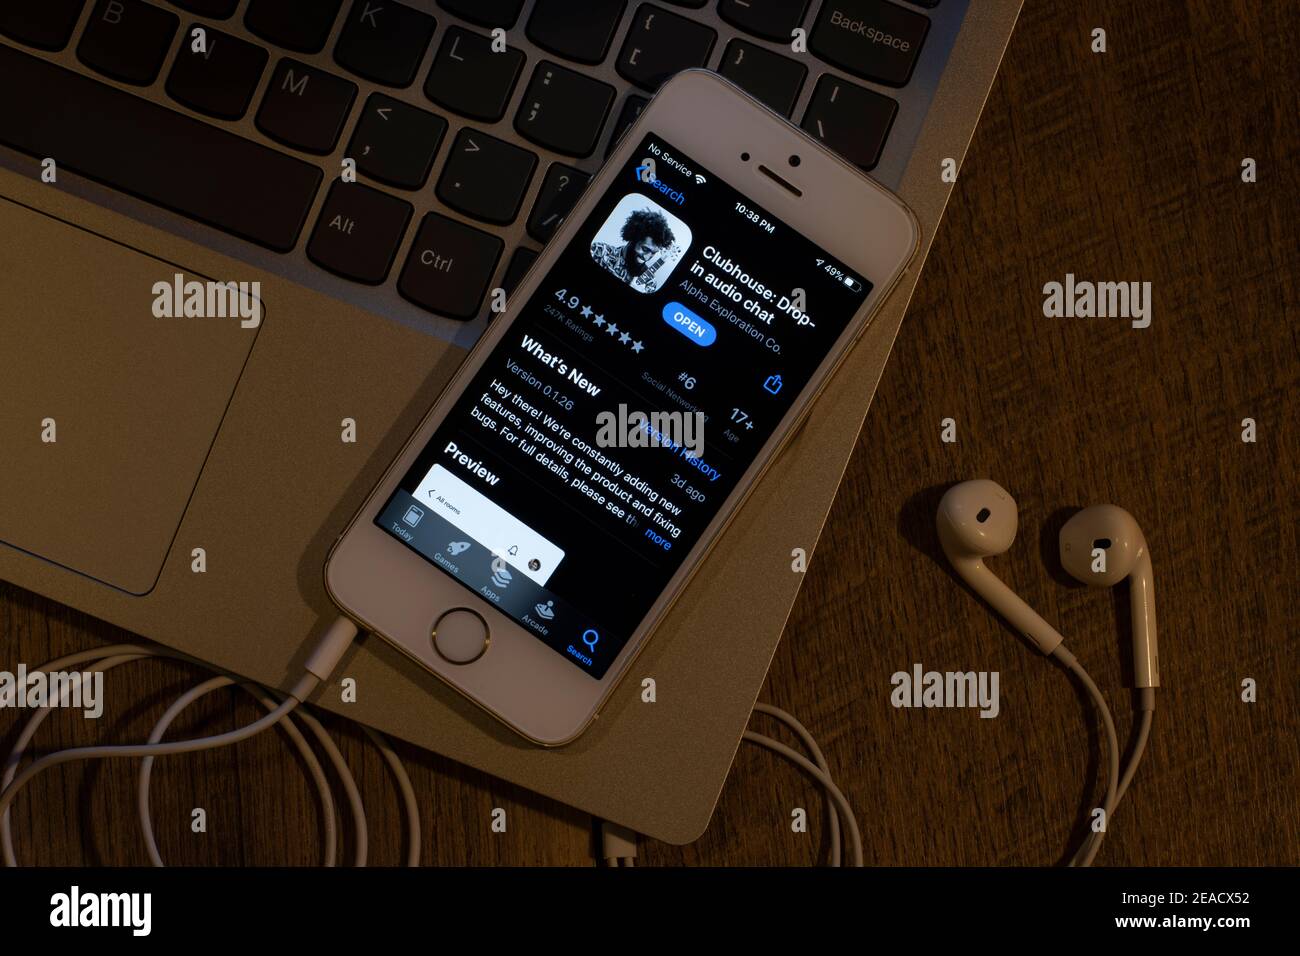 Clubhouse App Icon ist auf einem iPhone am 9. Februar 2021 zu sehen. Clubhouse Drop-in Audio Chat ist eine Einladung-only Audio-Chat Social Networking App. Stockfoto